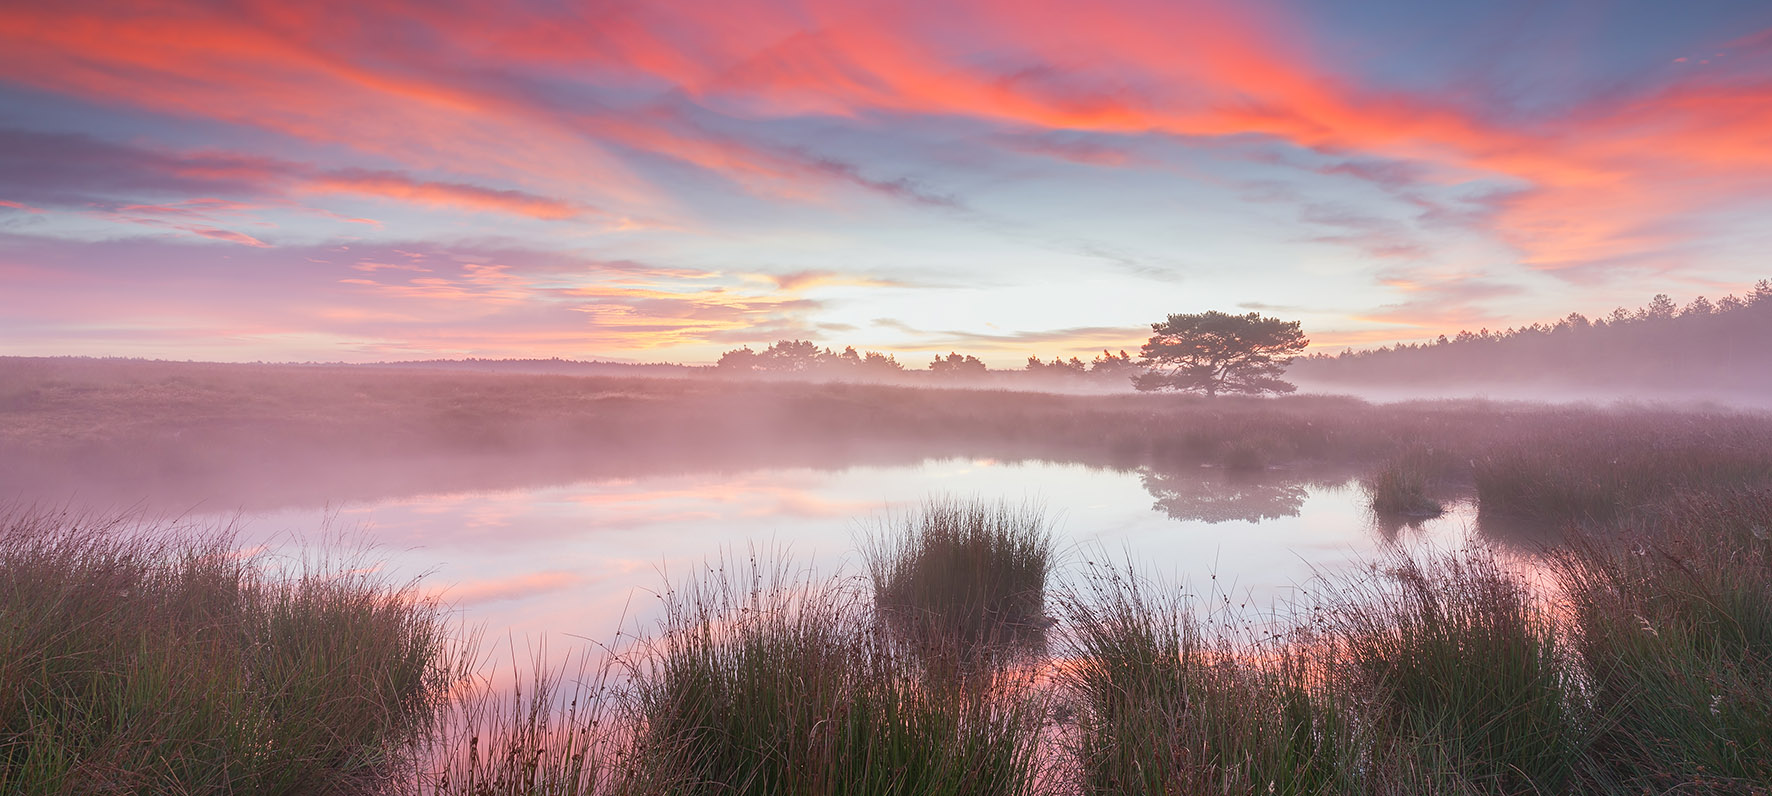 Op deze foto zie je een prachtige zonsopkomst bij een meer in National Park De Hoge Veluwe.